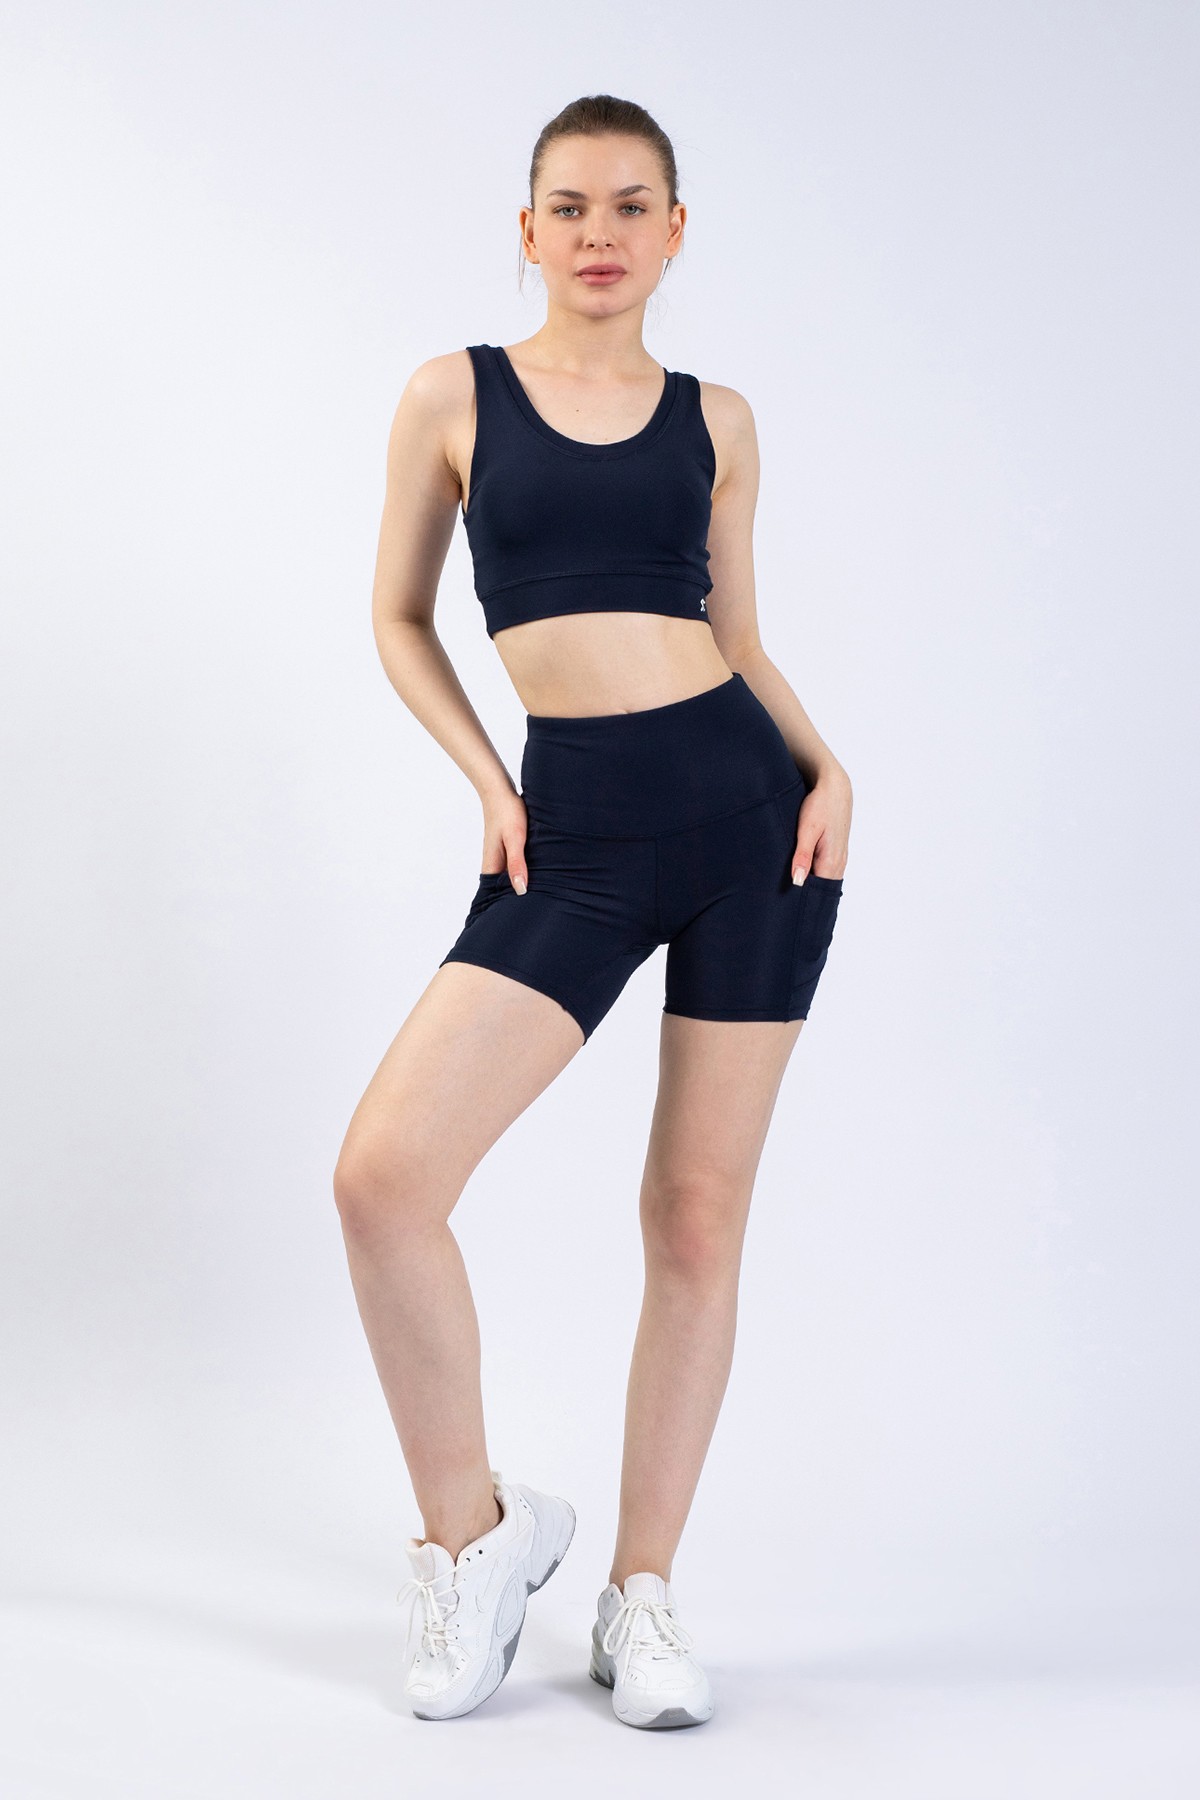 Snc Kadın Cepli Yüksek Bel Toparlayıcı, Sıkılaştırıcı Yoga Şort Tayt 6" - Lacivert